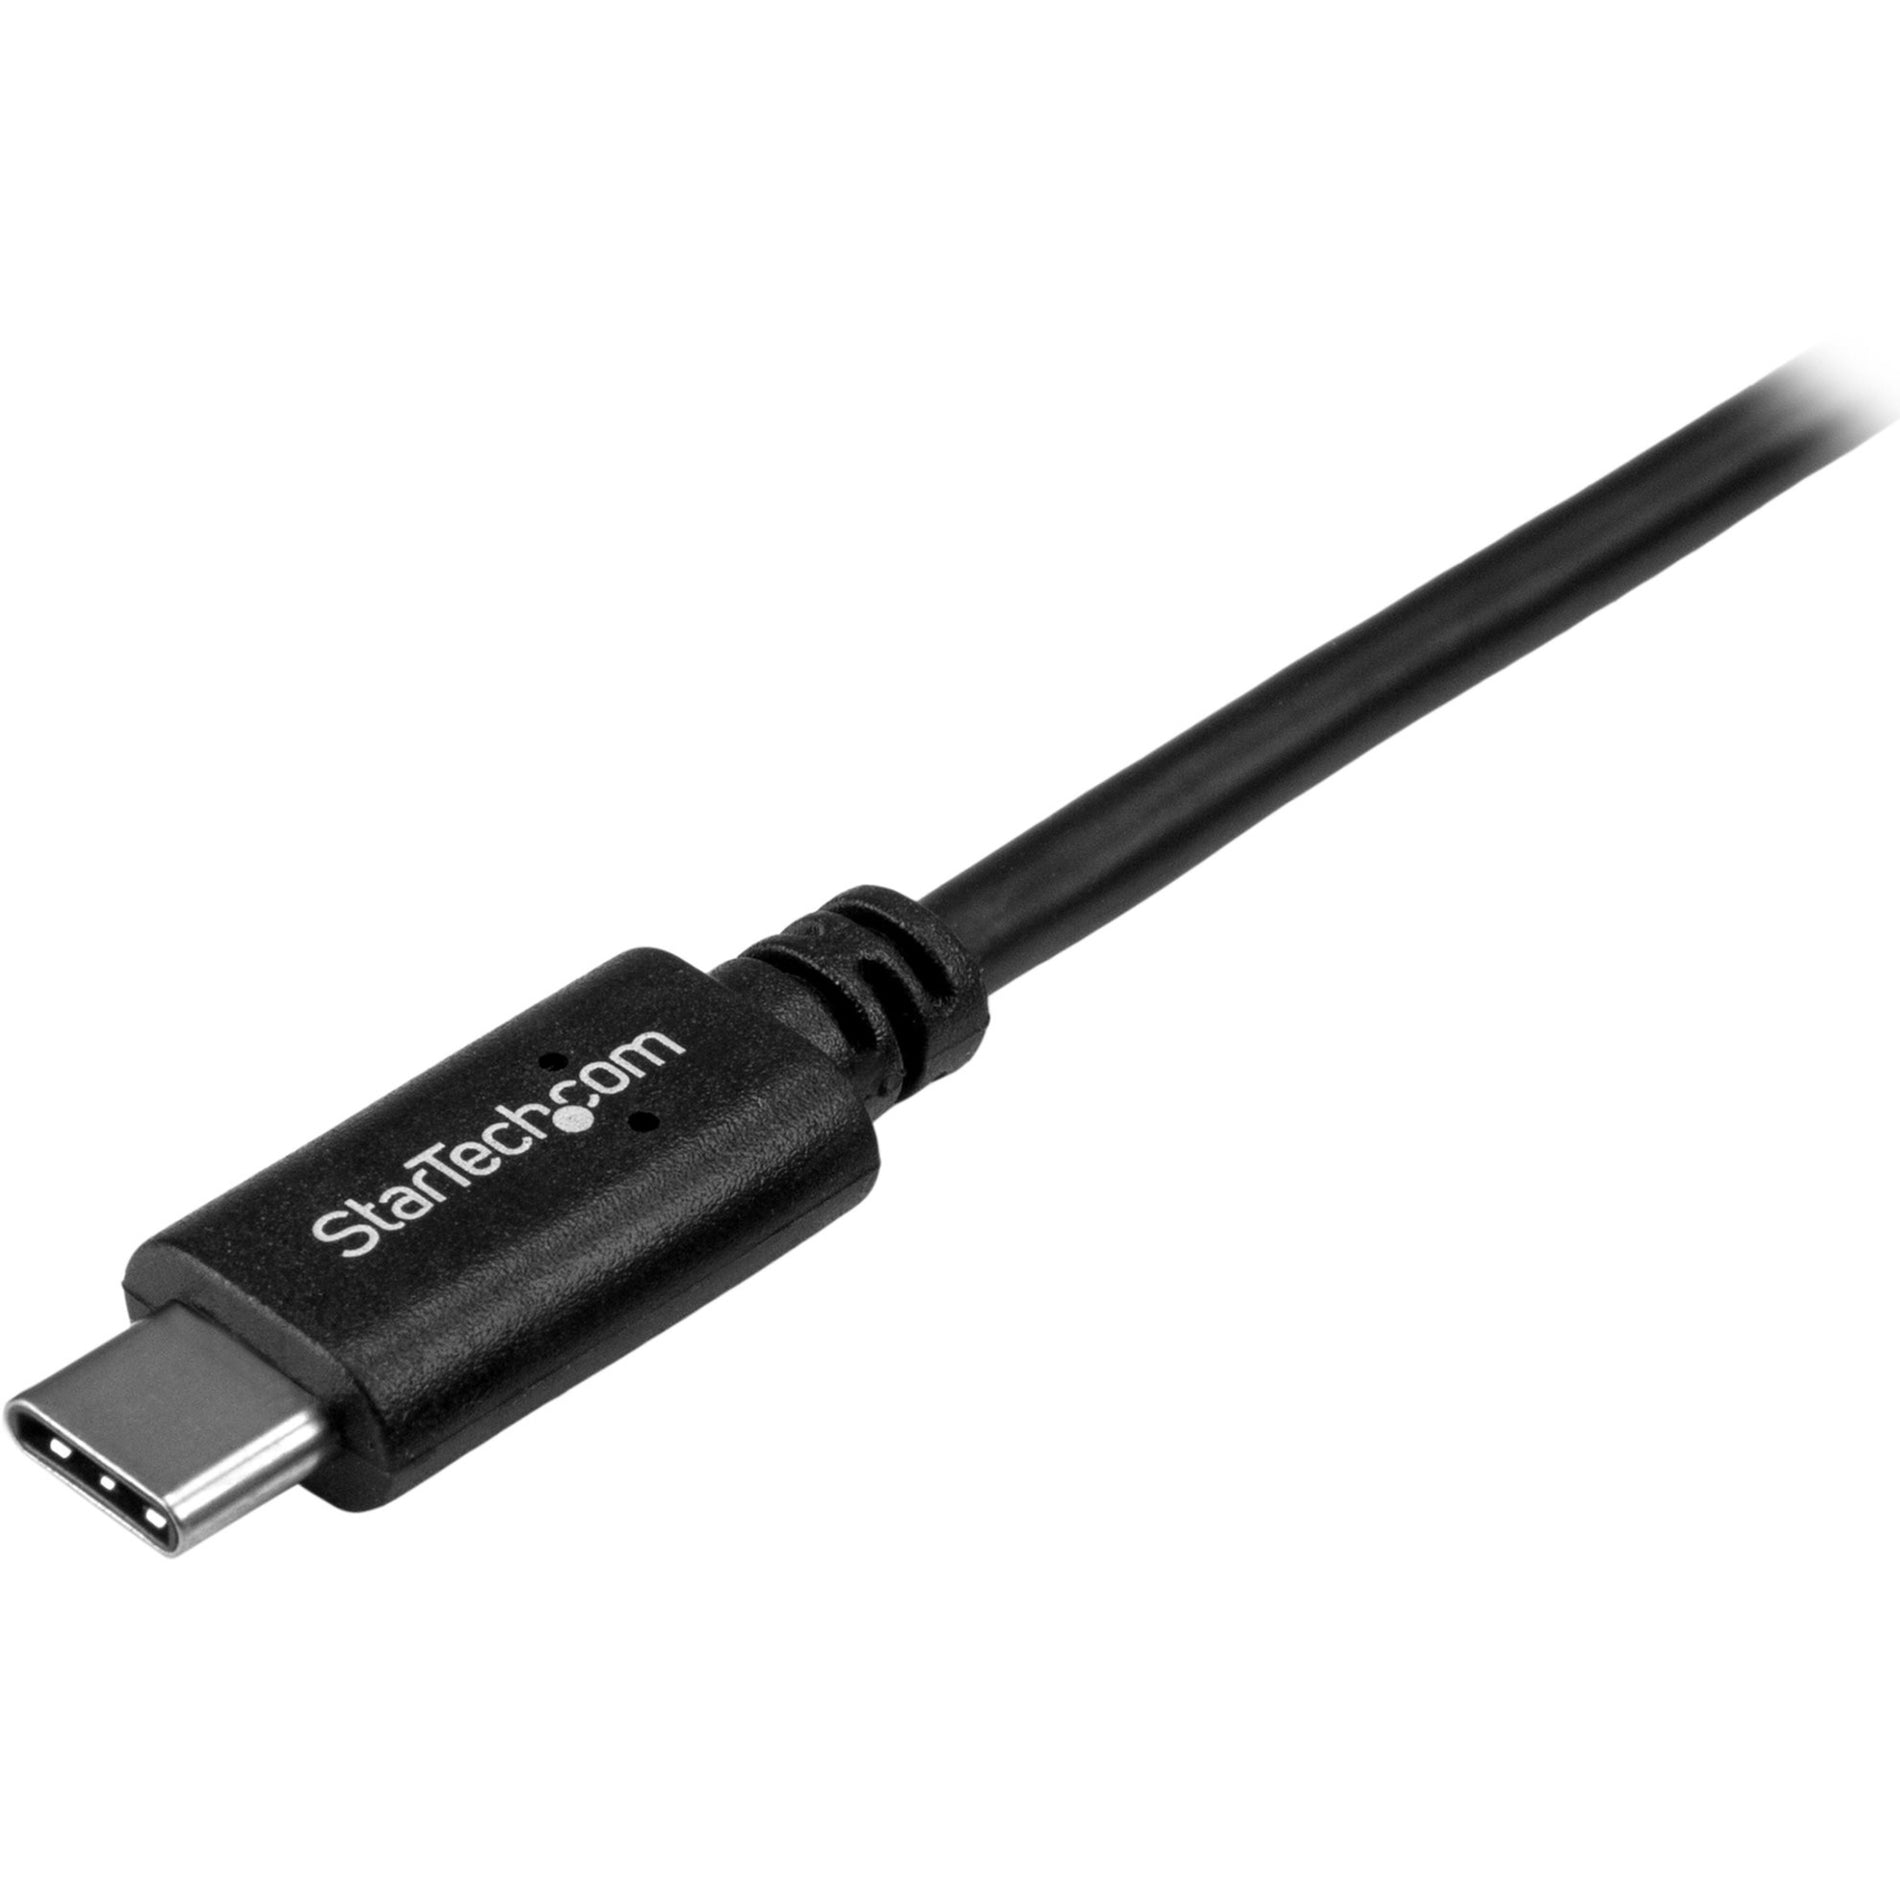 StarTech.com USB2CC50CM USB-C Cable - M/M - 0.5m - USB 2.0, Short USB C Cable, USB-C Charger Cable